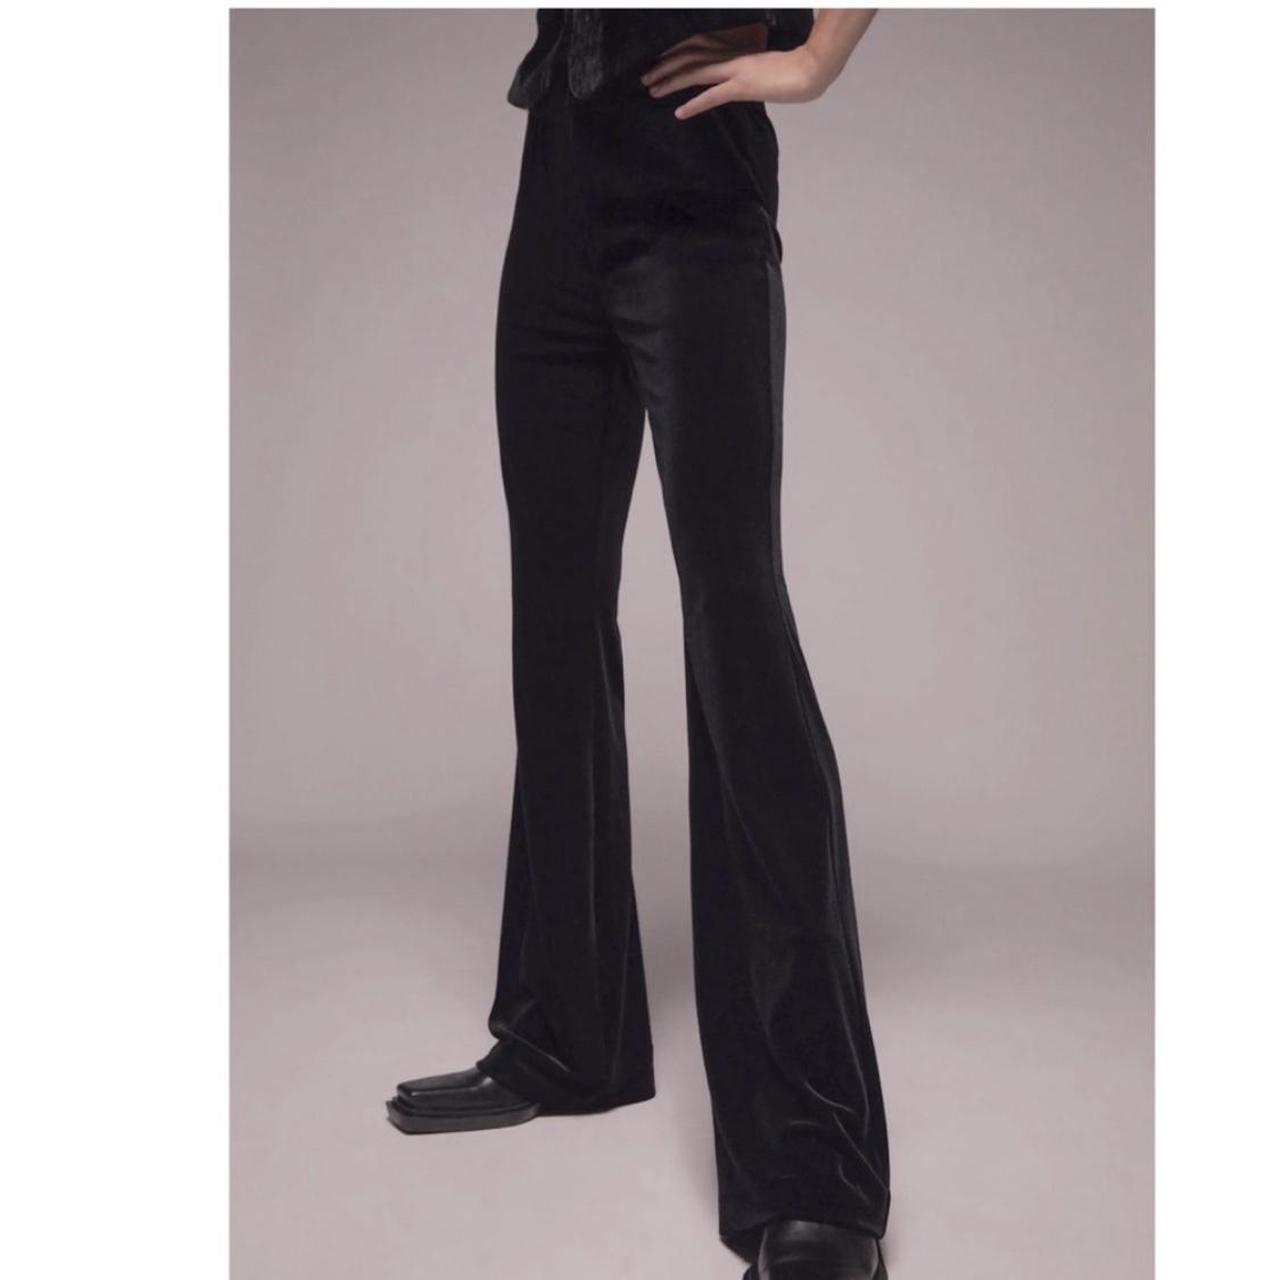 Zara striped velvet pants, Women's Fashion, Bottoms, Jeans & Leggings on  Carousell